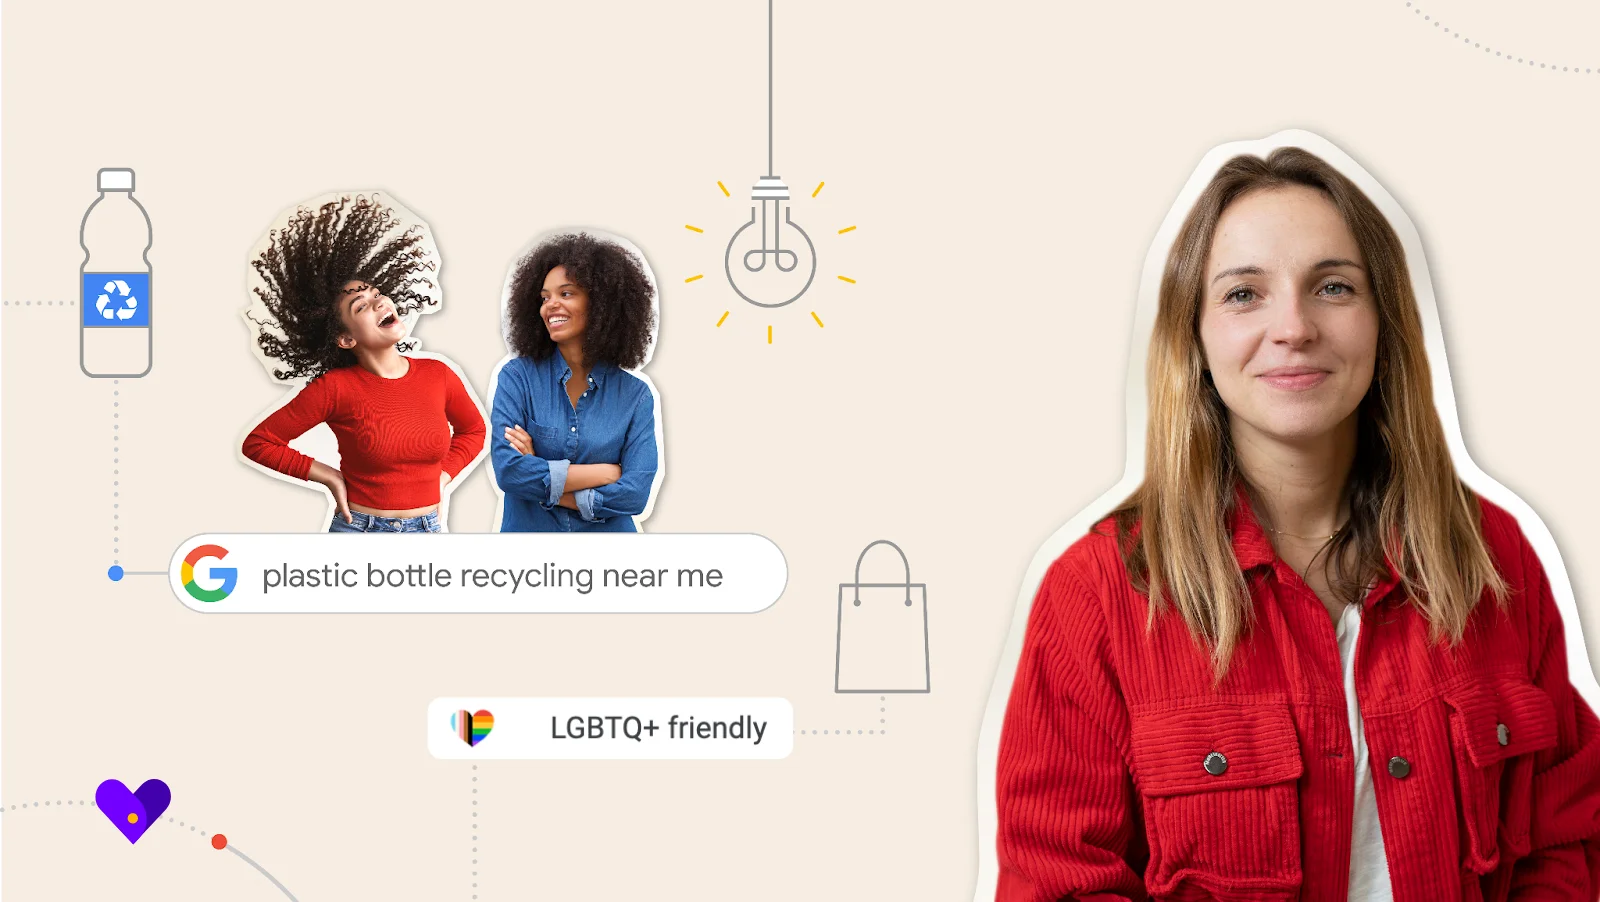 fotos de tres mujeres con cuadros de texto que dicen "LGBTQ+ friendly" (amigable con LGBTQ+) y "plastic bottle recycling near me" (reciclado de botellas de plástico cerca de mí)